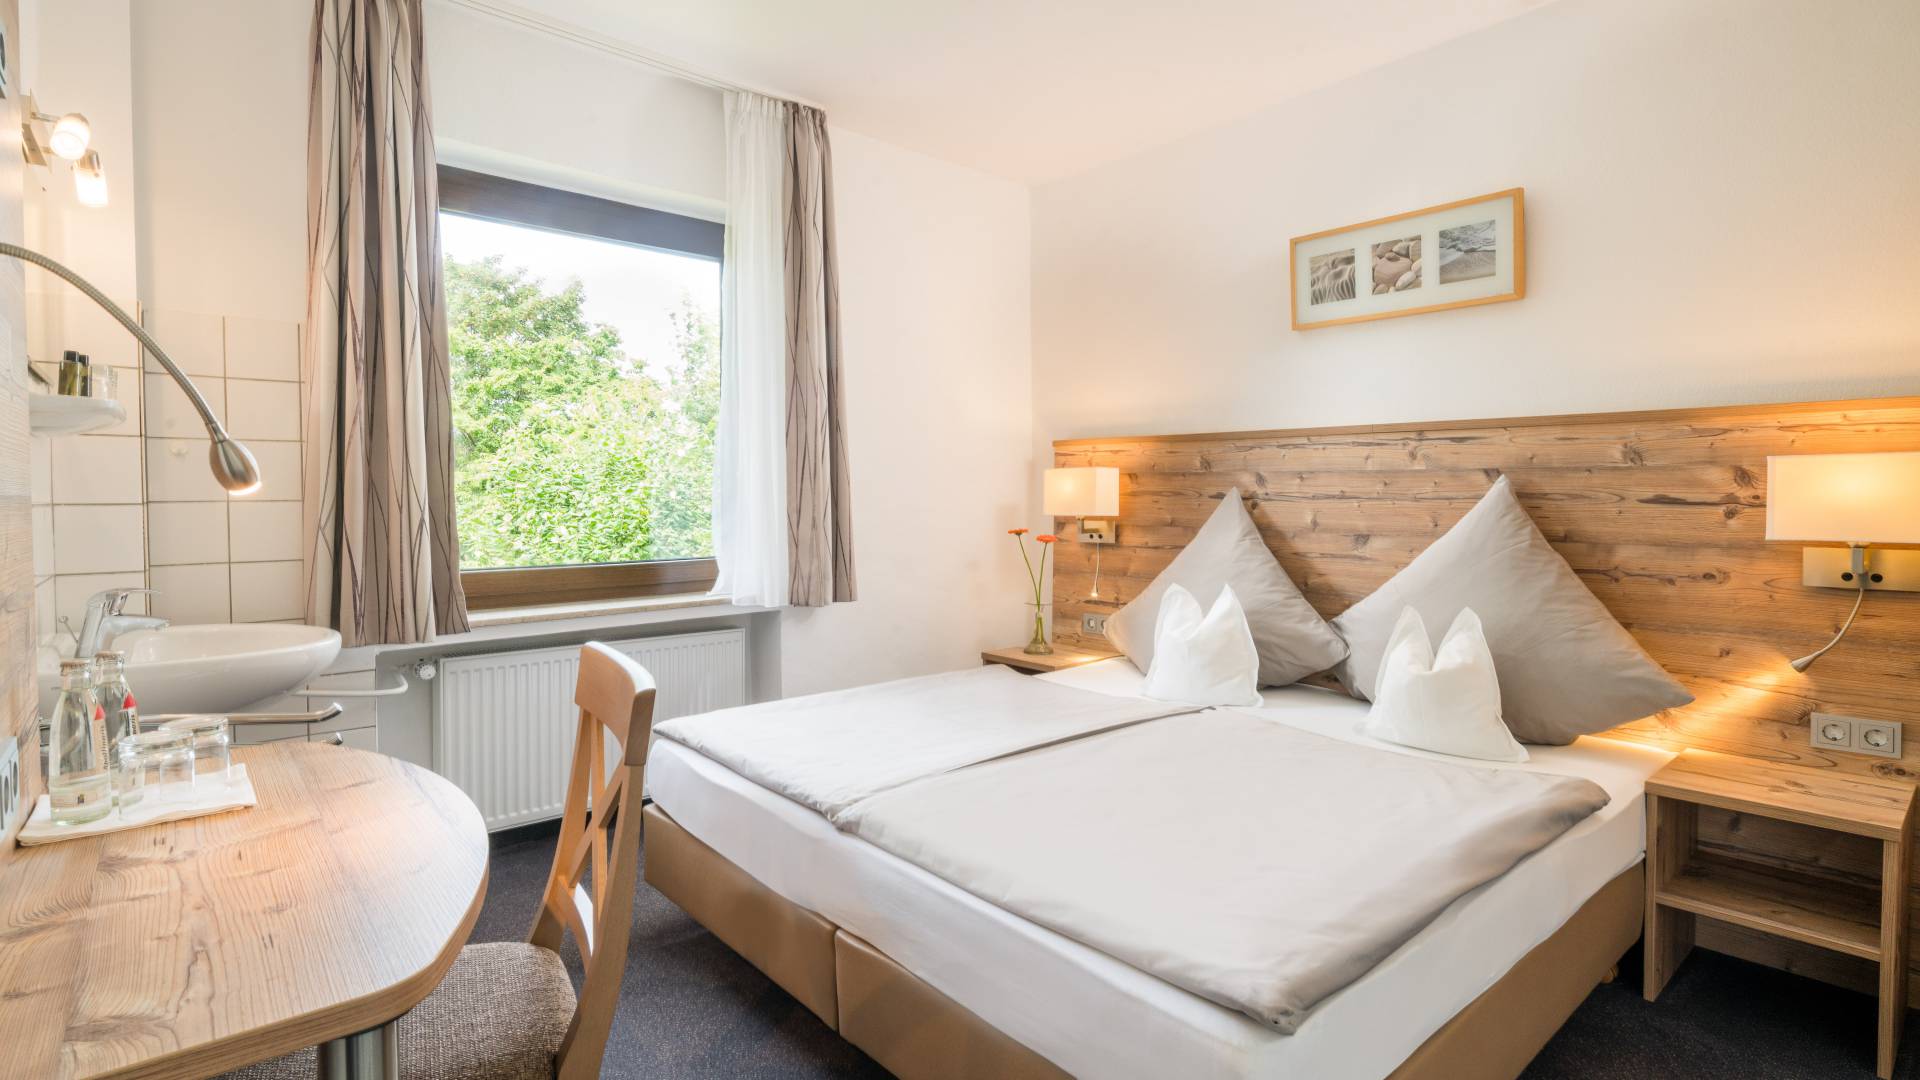 Economy-Zimmer mit Schreibtisch, Waschbecken, Bett und Ausblick,Hotel Nussbaum, Ratingen-Hösel